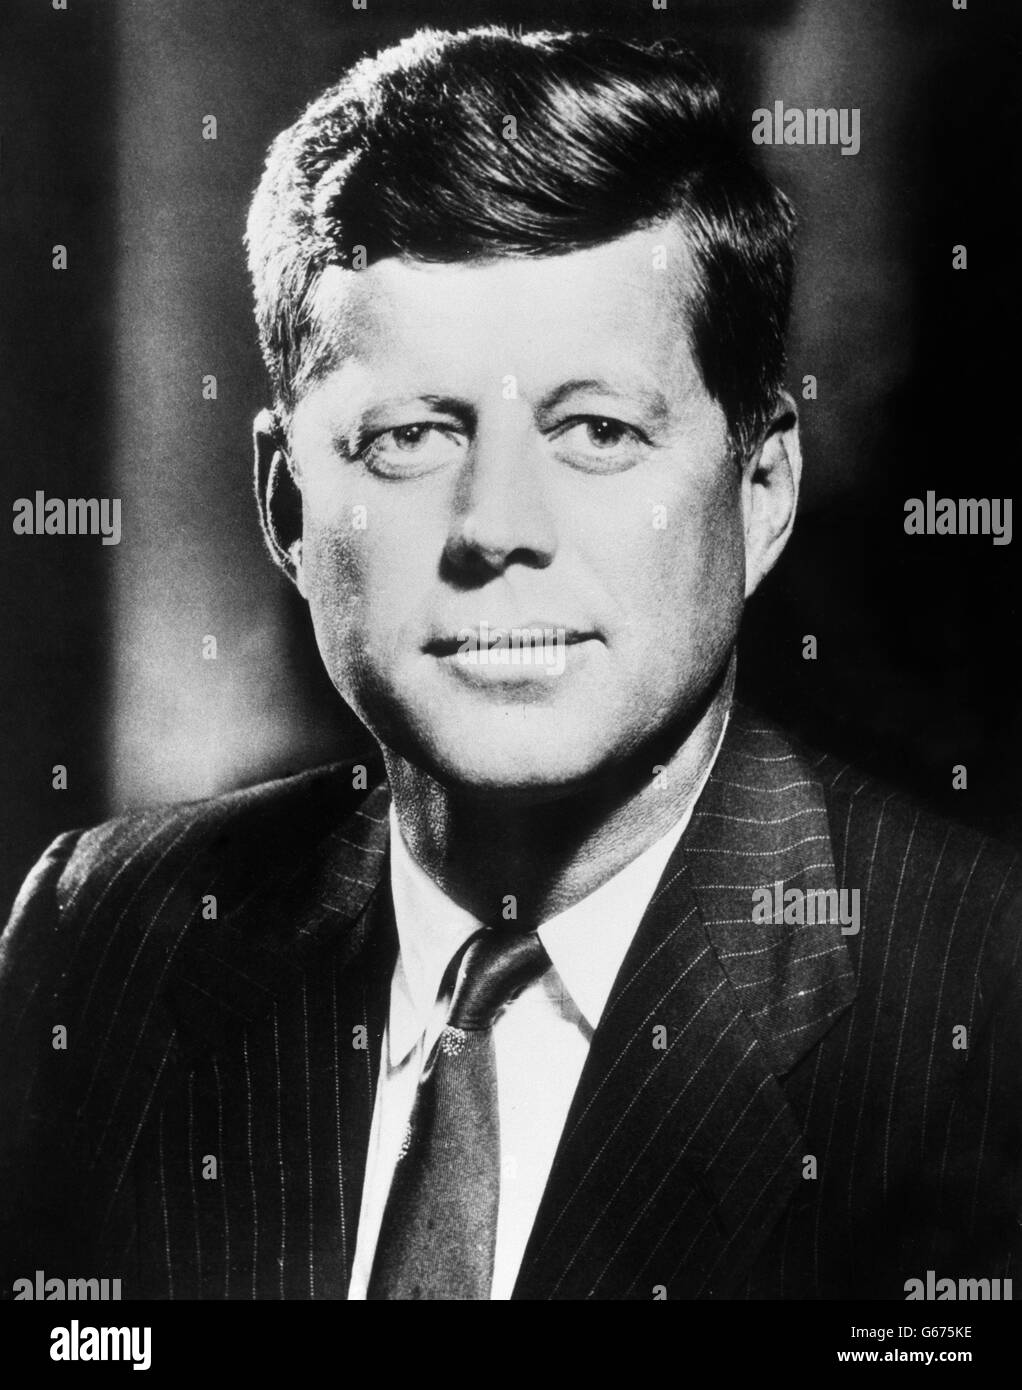 US-Politik - John F. Kennedy. Stockaufnahme des amerikanischen Präsidenten John F. Kennedy. Stockfoto